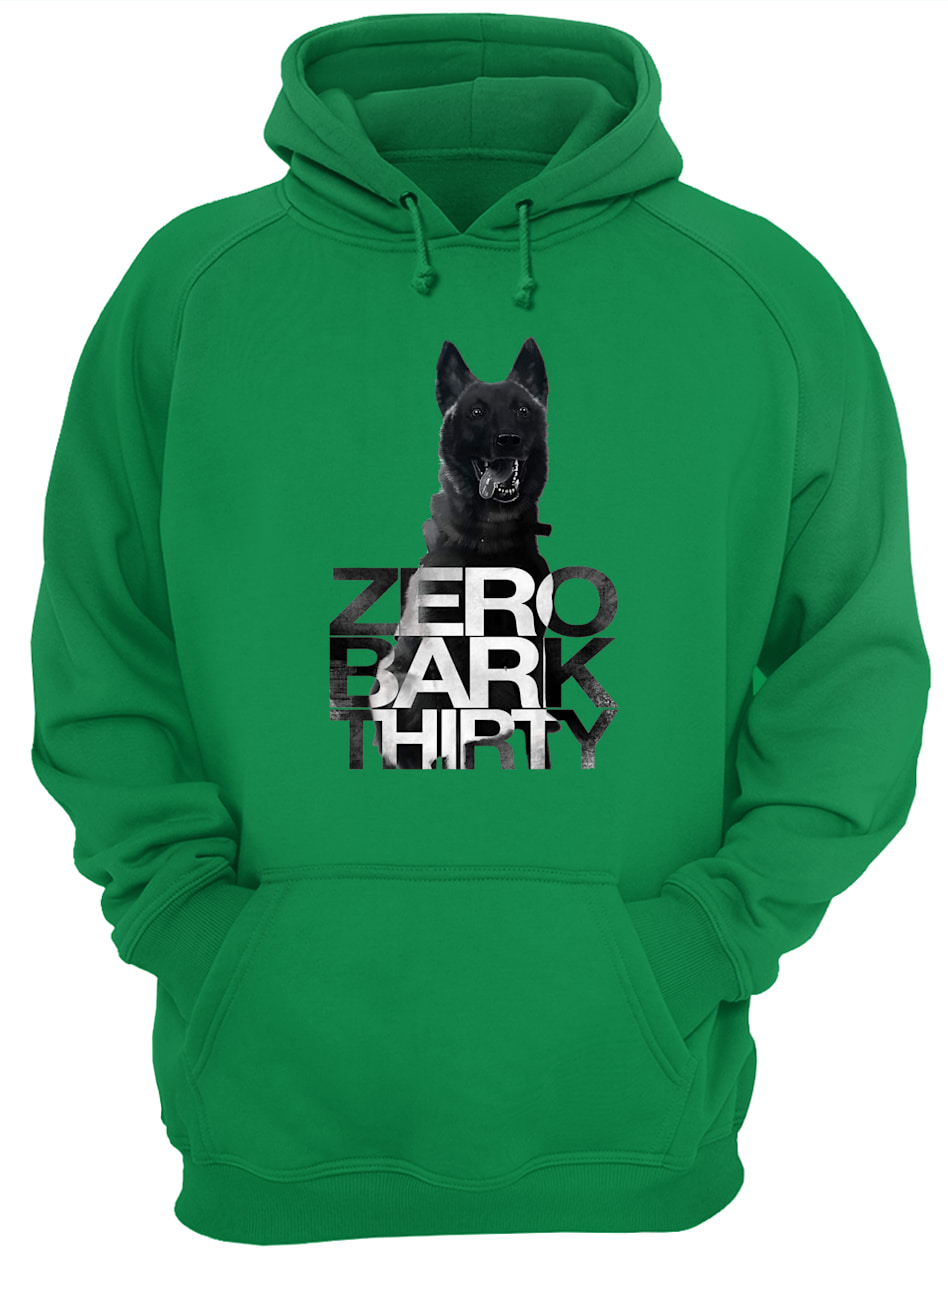 Zero bark thirty belgian malinois military dog hero hoodie